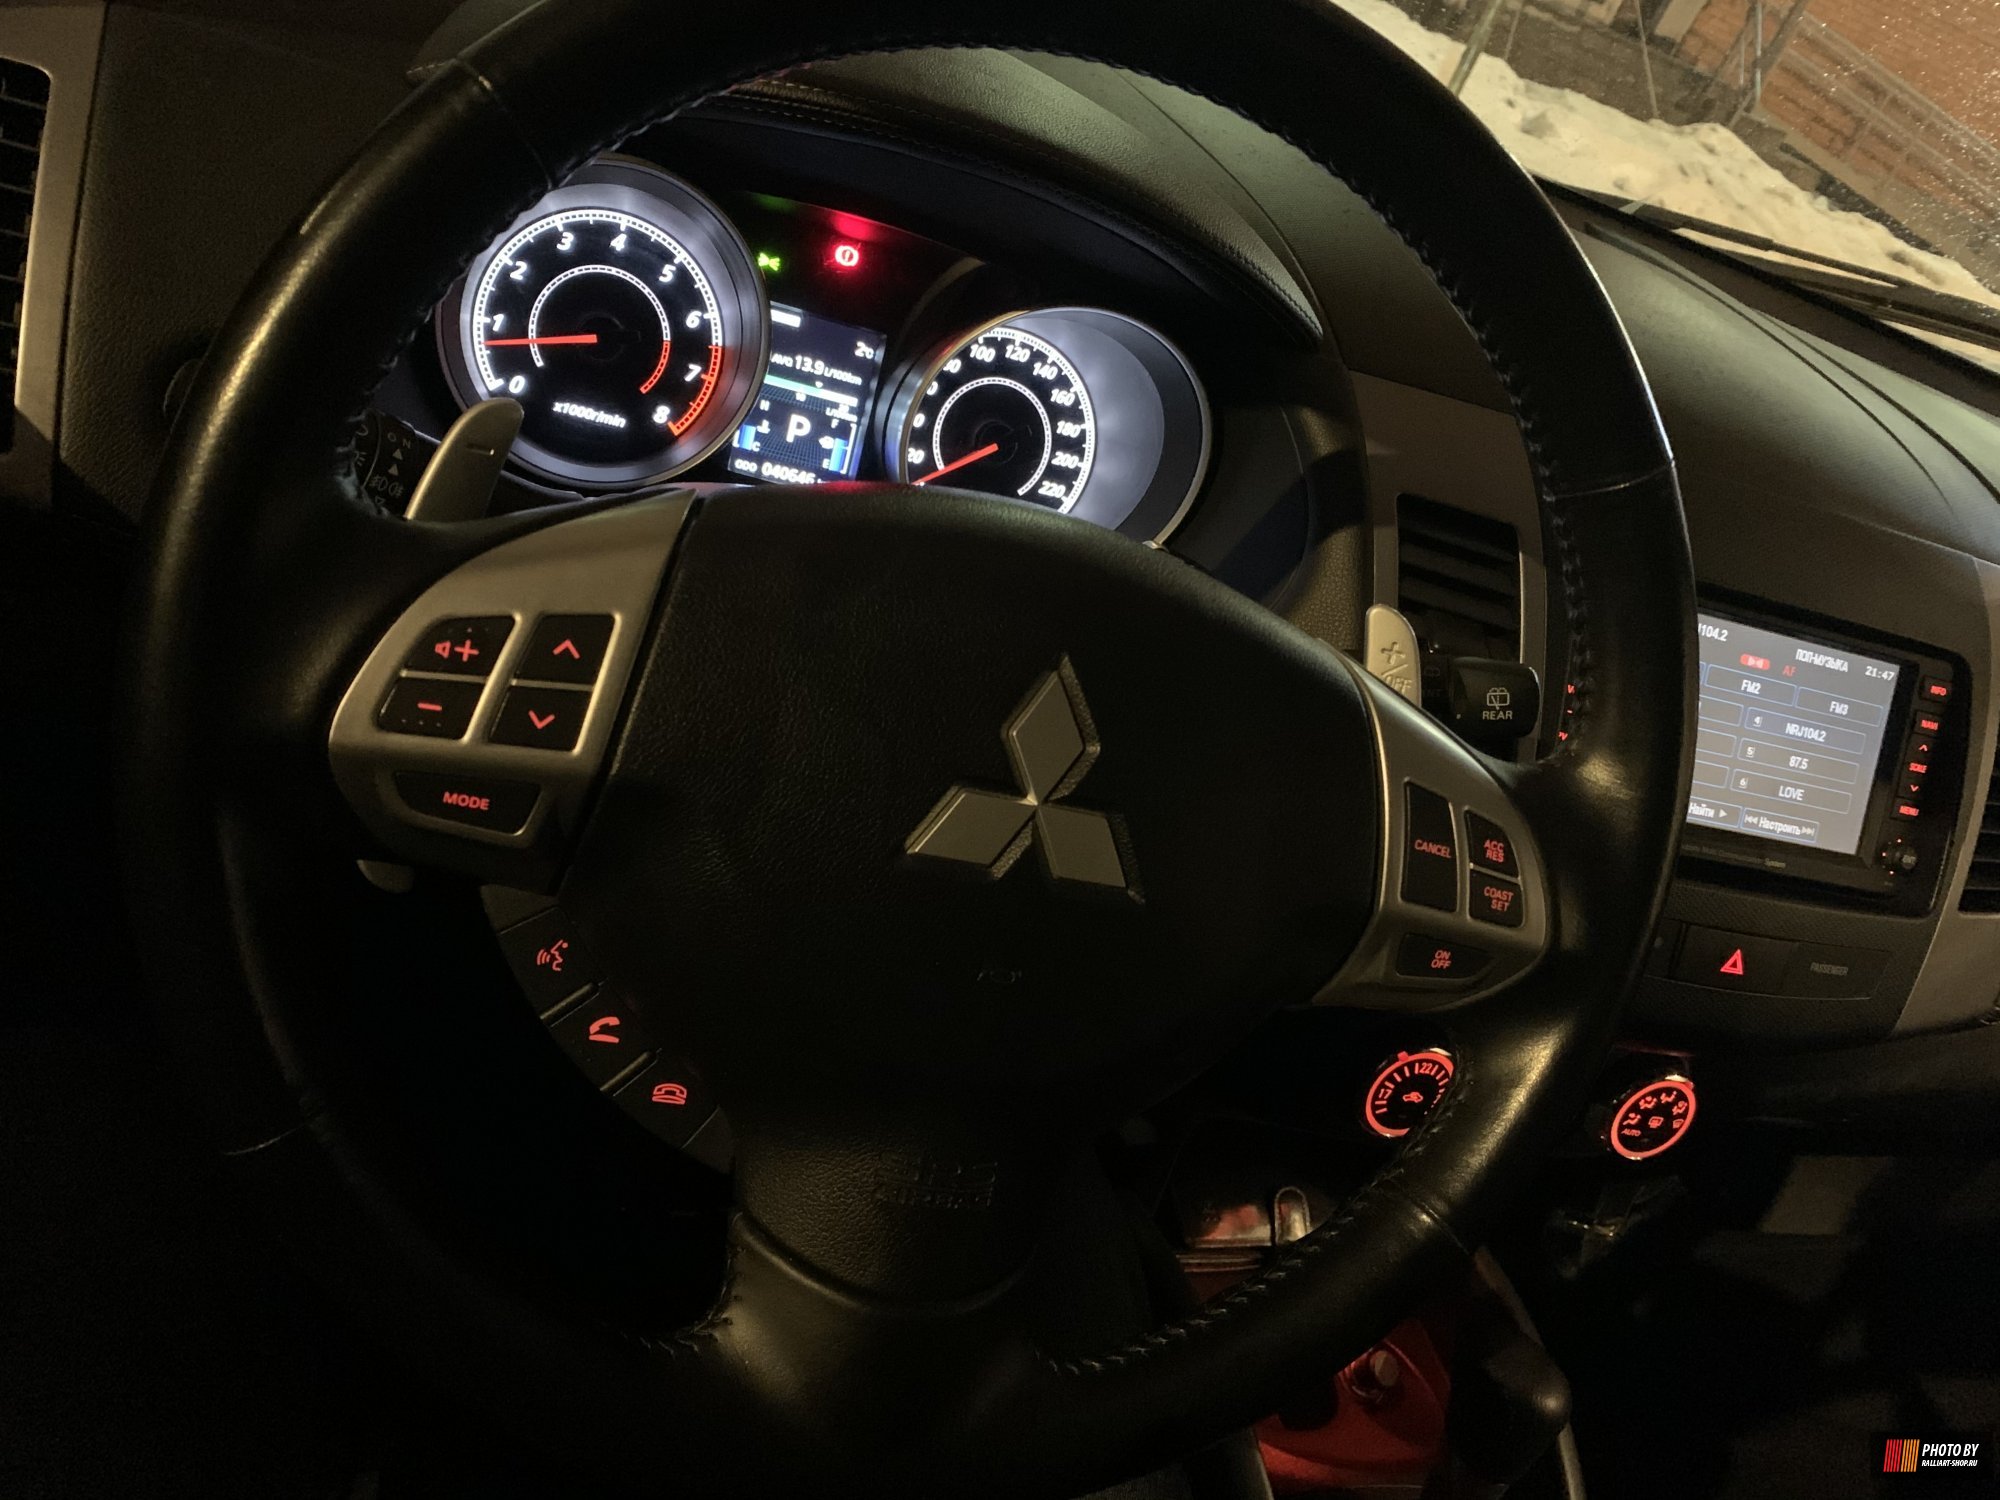 Установка круиз-контроля на Mitsubishi Outlander XL